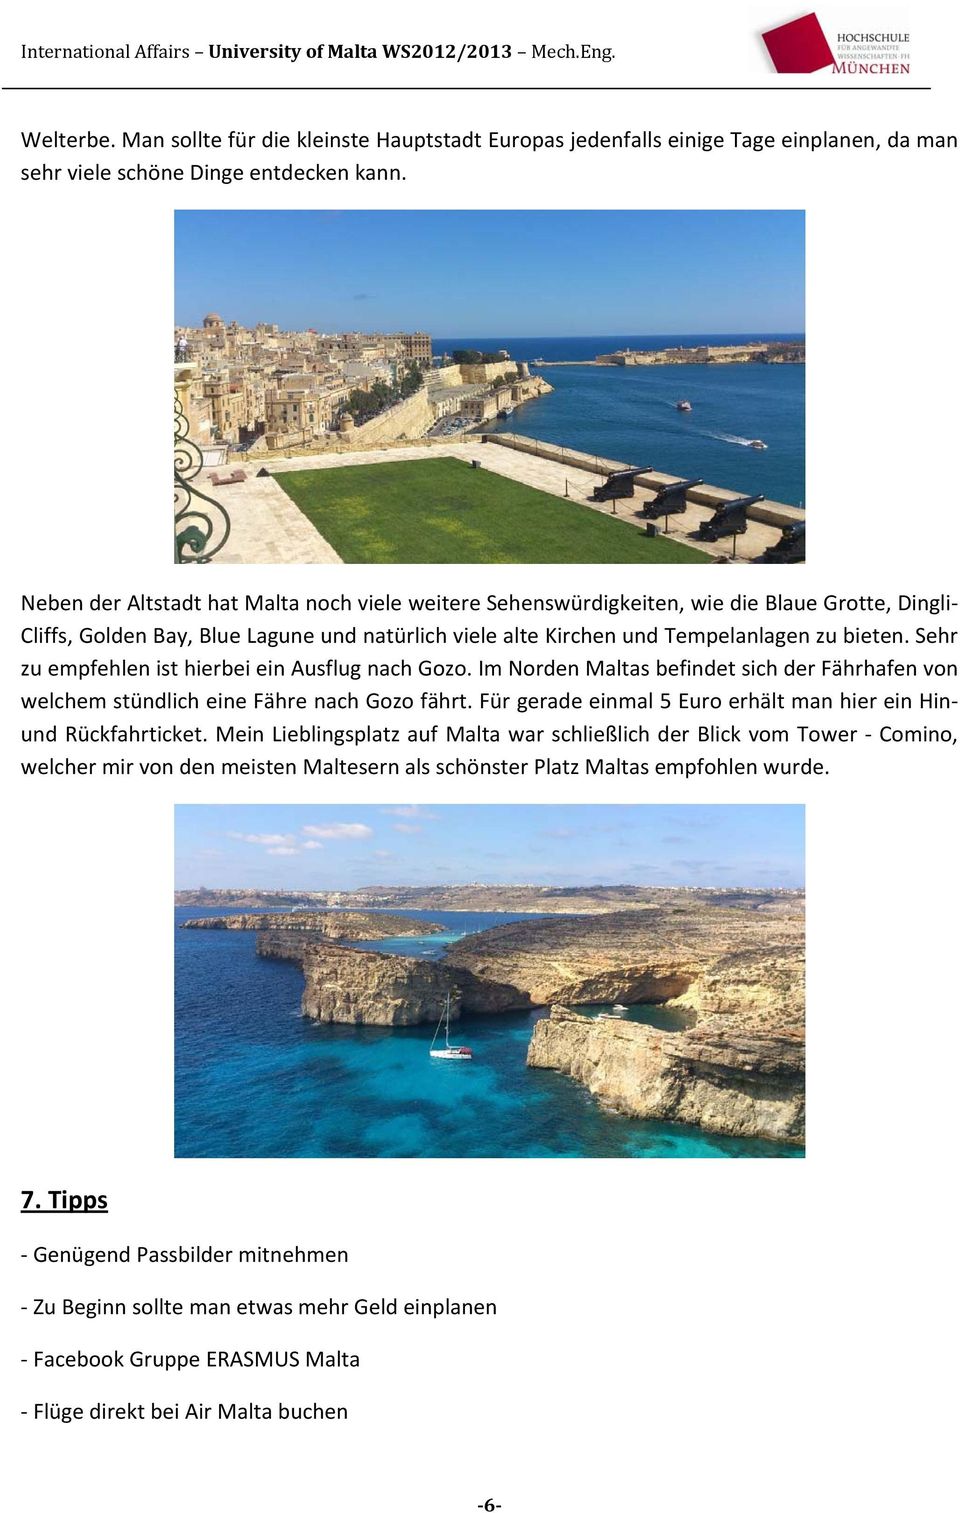 Sehr zu empfehlen ist hierbei ein Ausflug nach Gozo. Im Norden Maltas befindet sich der Fährhafen von welchem stündlich eine Fähre nach Gozo fährt.